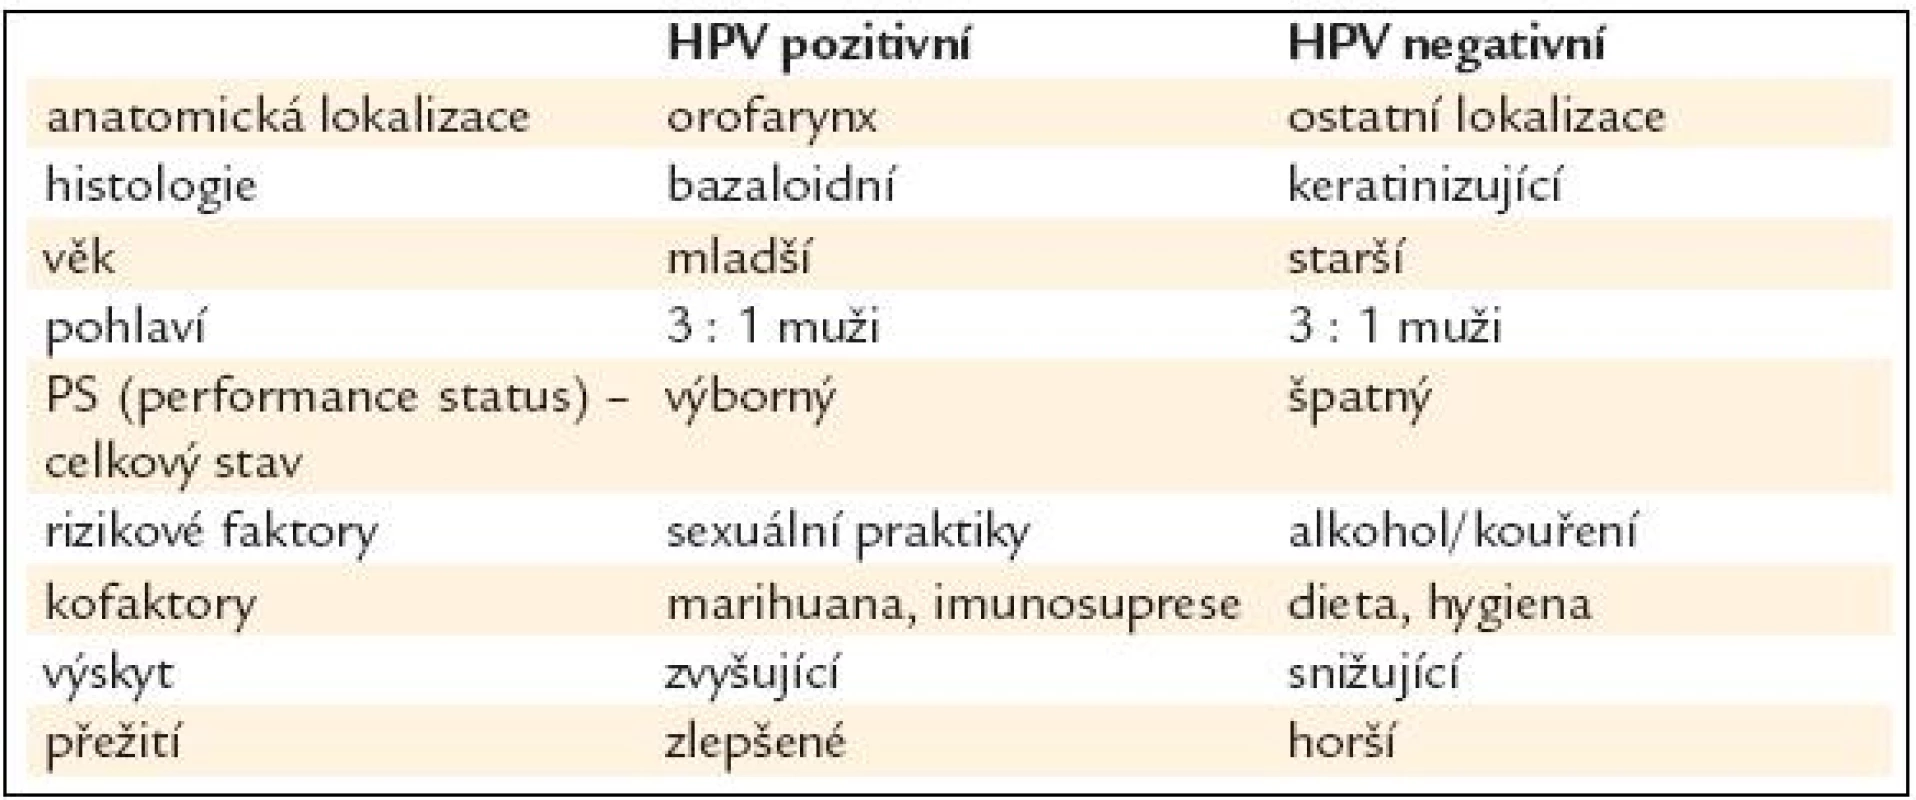 HPV pozitivní a HPV negativní karcinomy jsou dvě rozdílná onemocnění [7].